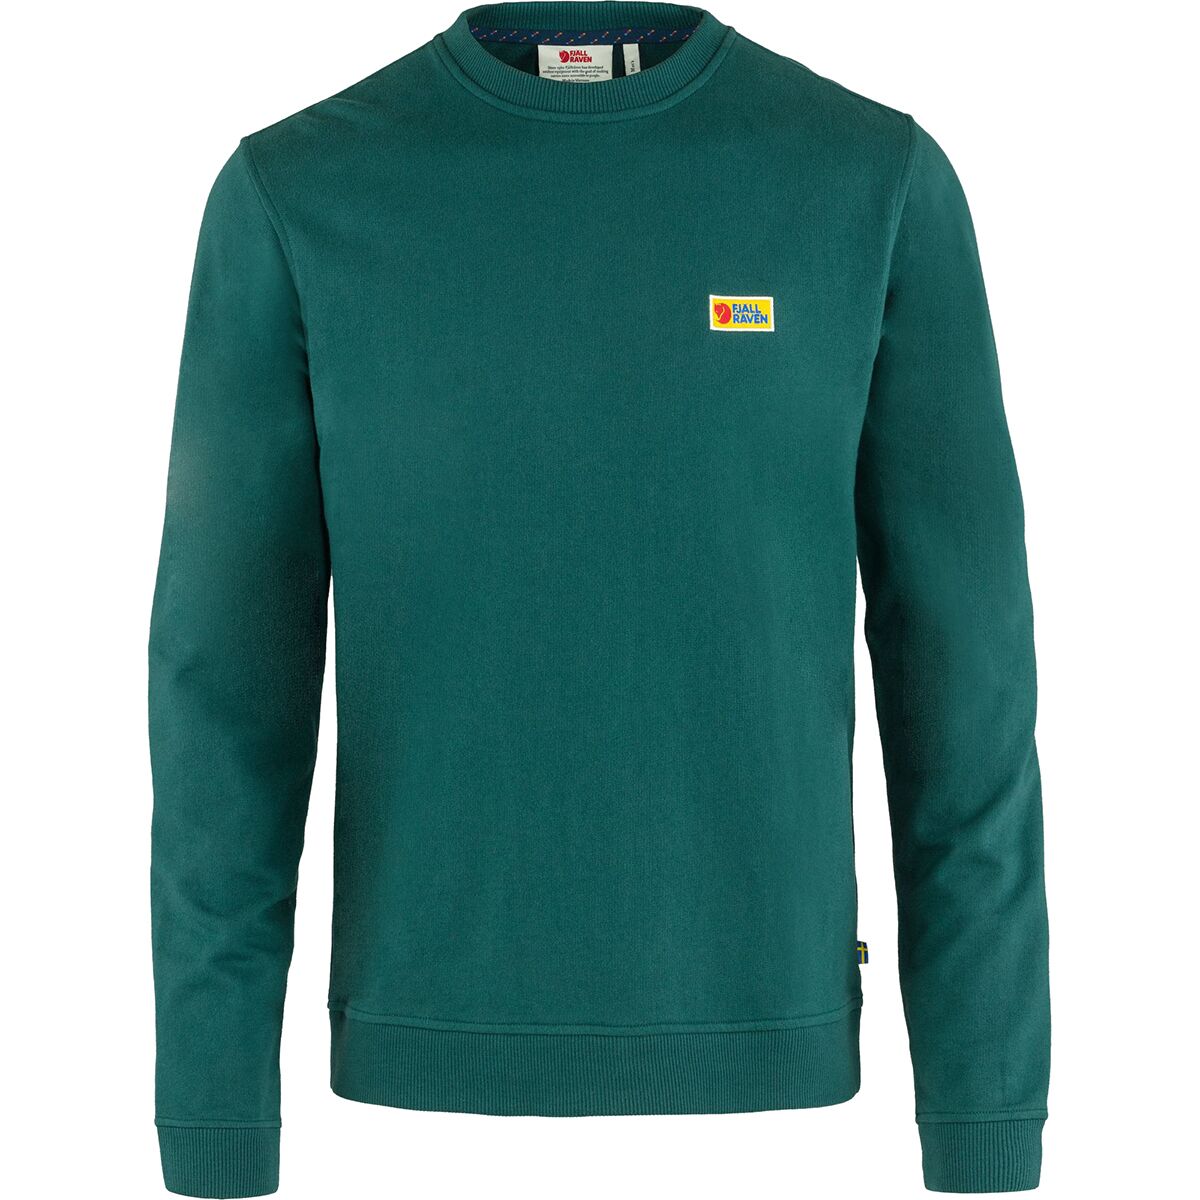 Fjallraven Vardag Sweater - Men's - Clothing